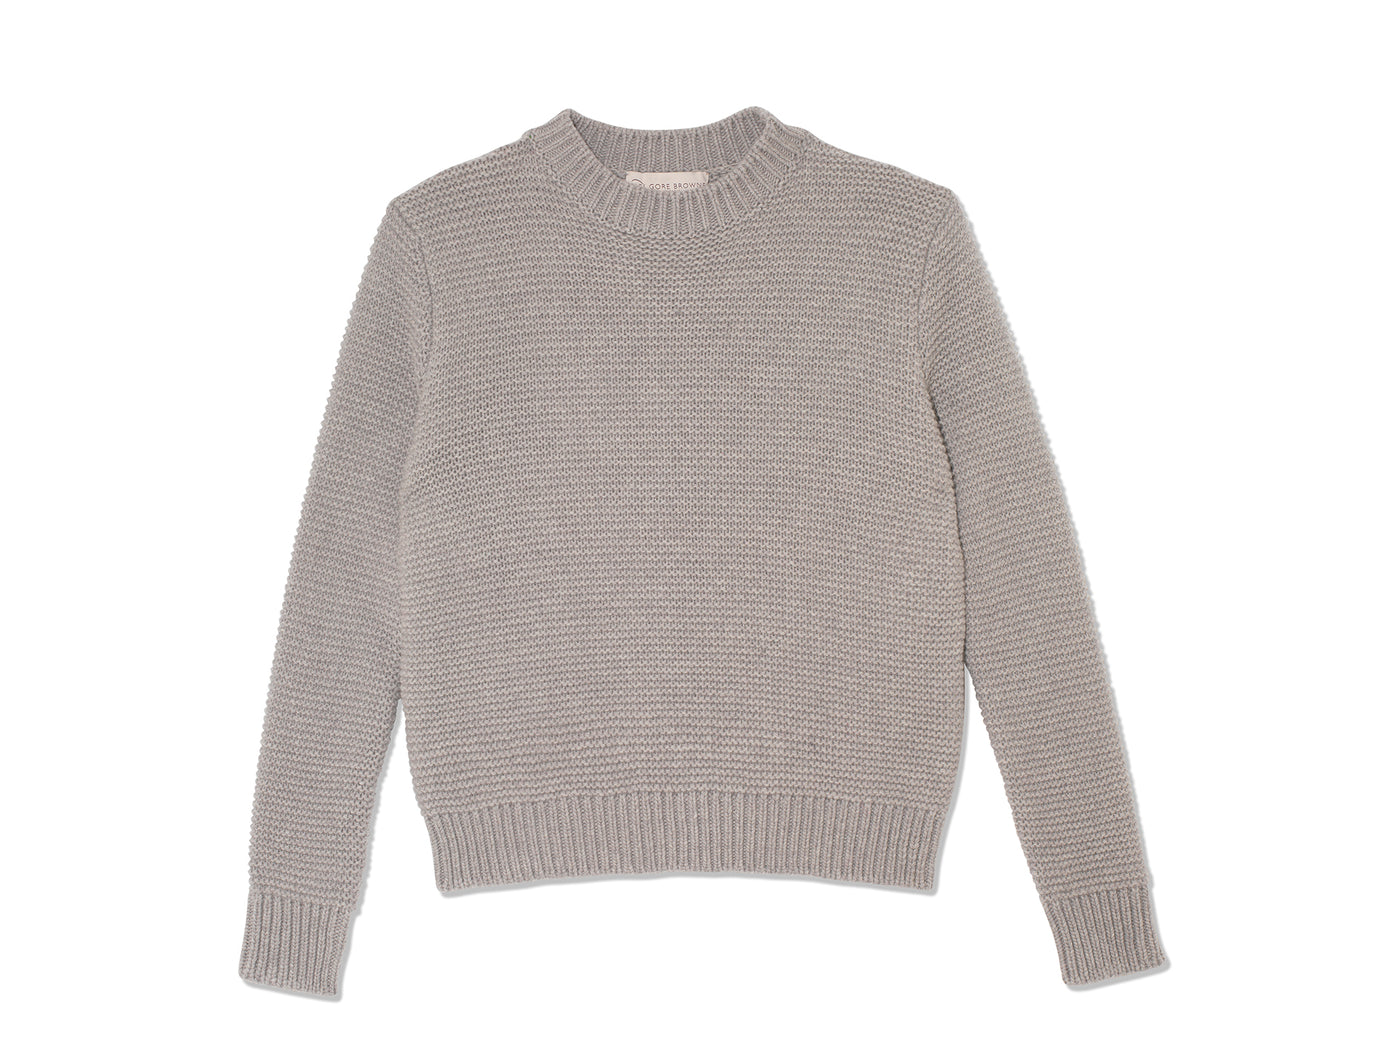 Purl Stitch Sweater - Cloudy Grey